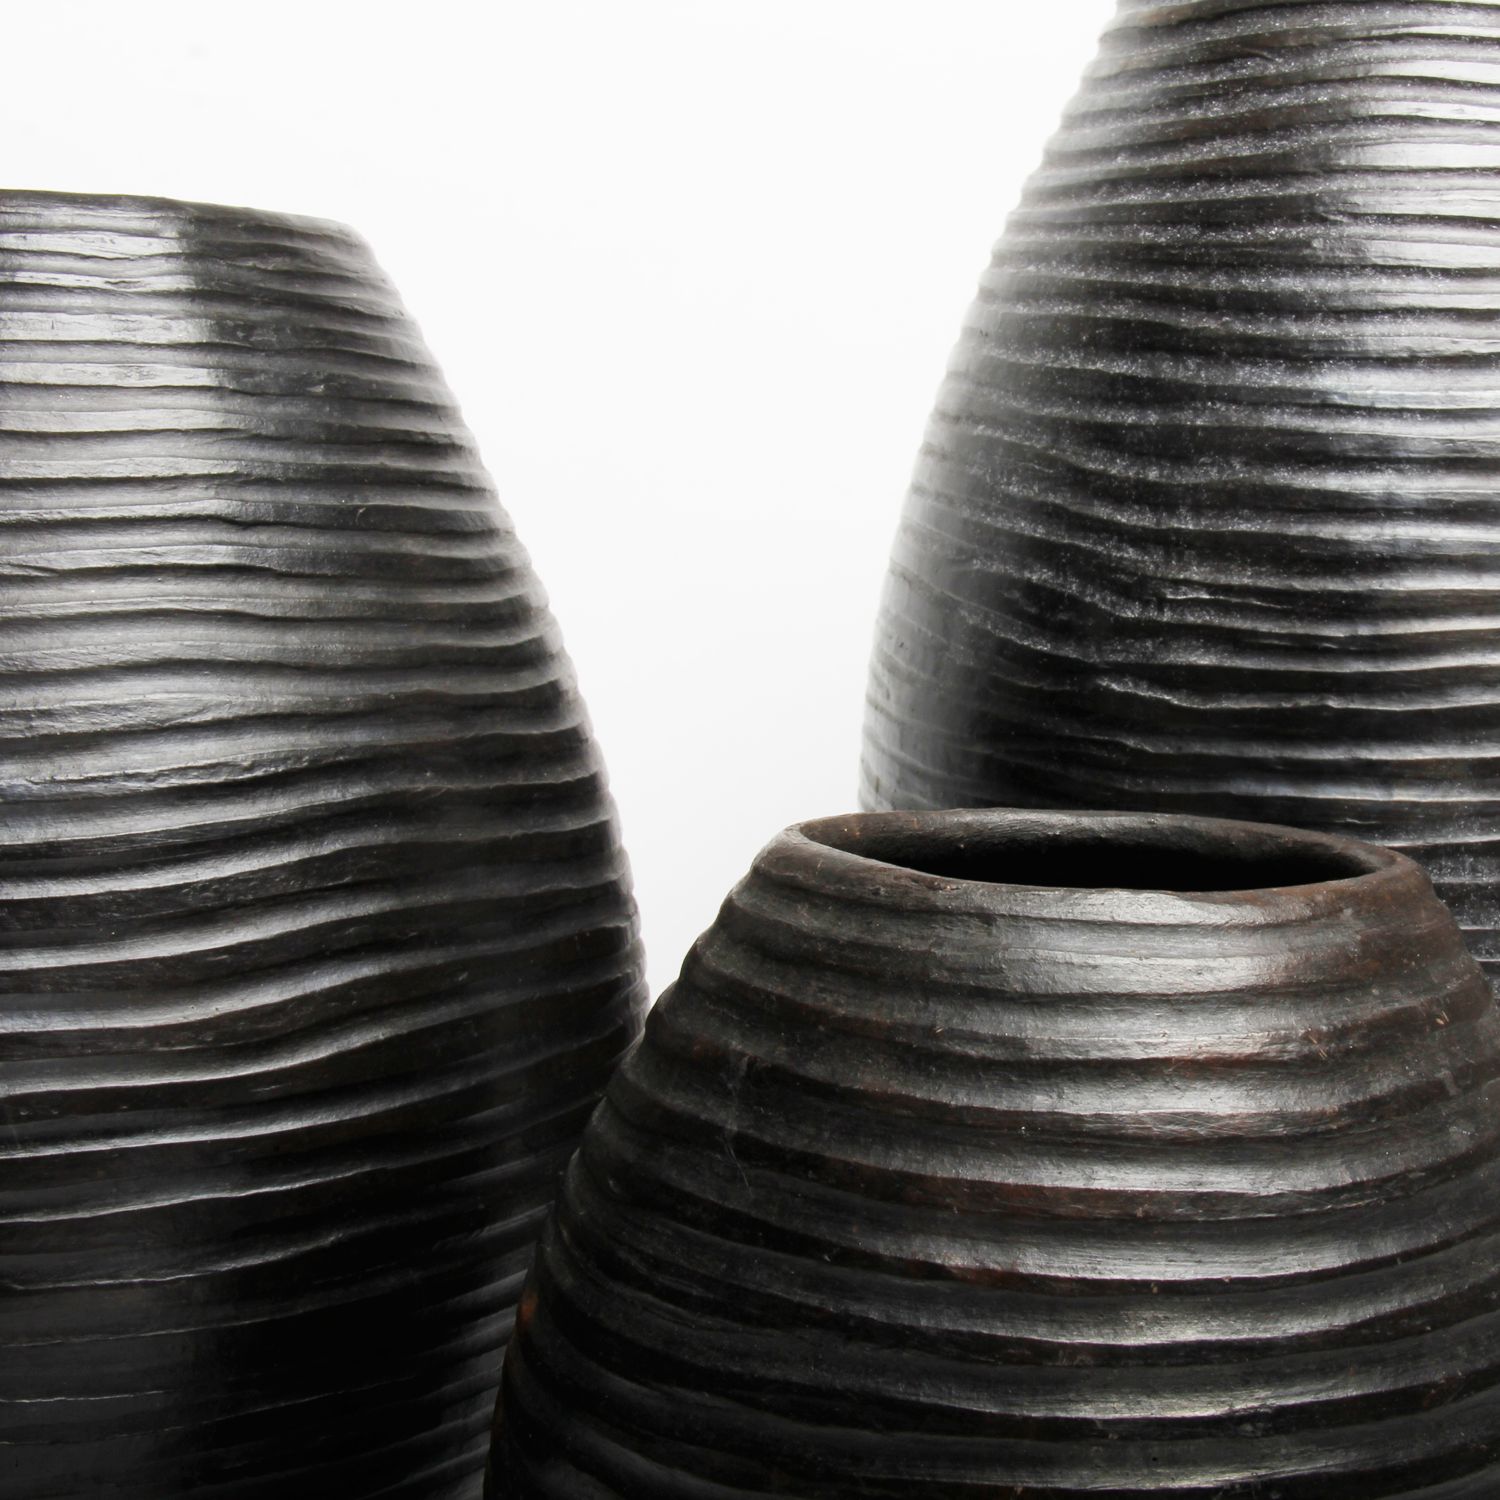 AfriCharisma: Small Multi-Ring Vase Product Image 2 of 2